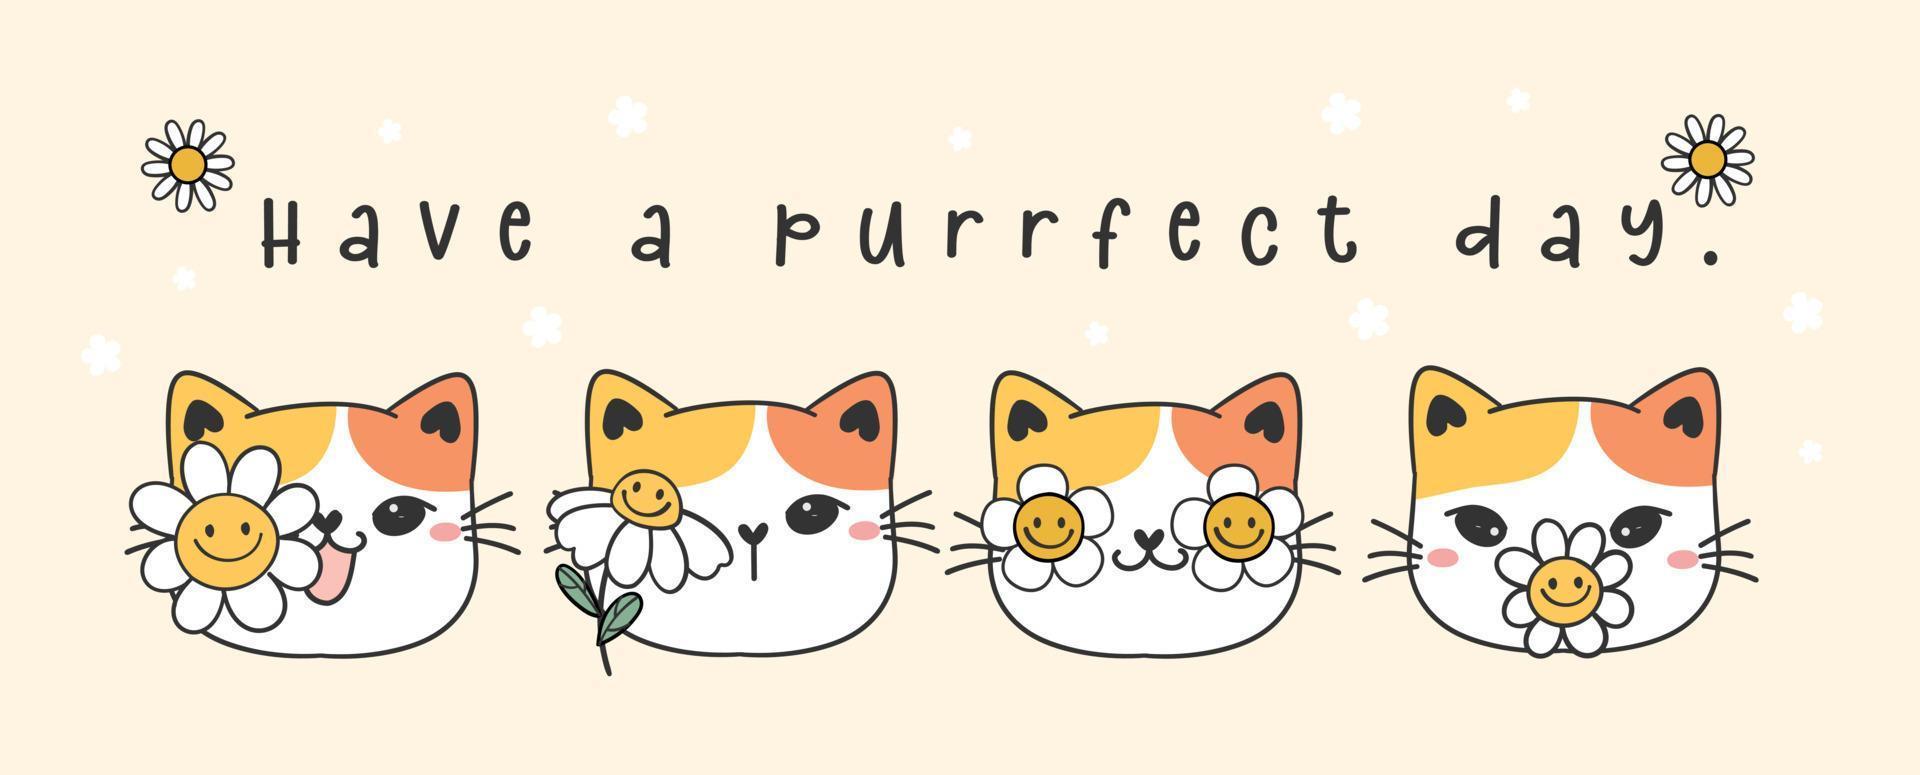 avere uno striscione di giorno purrfect, un gruppo di simpatici gattini calicò facce con fiori di margherita bianca sui volti, illustrazione vettoriale di animali da compagnia cartone animato